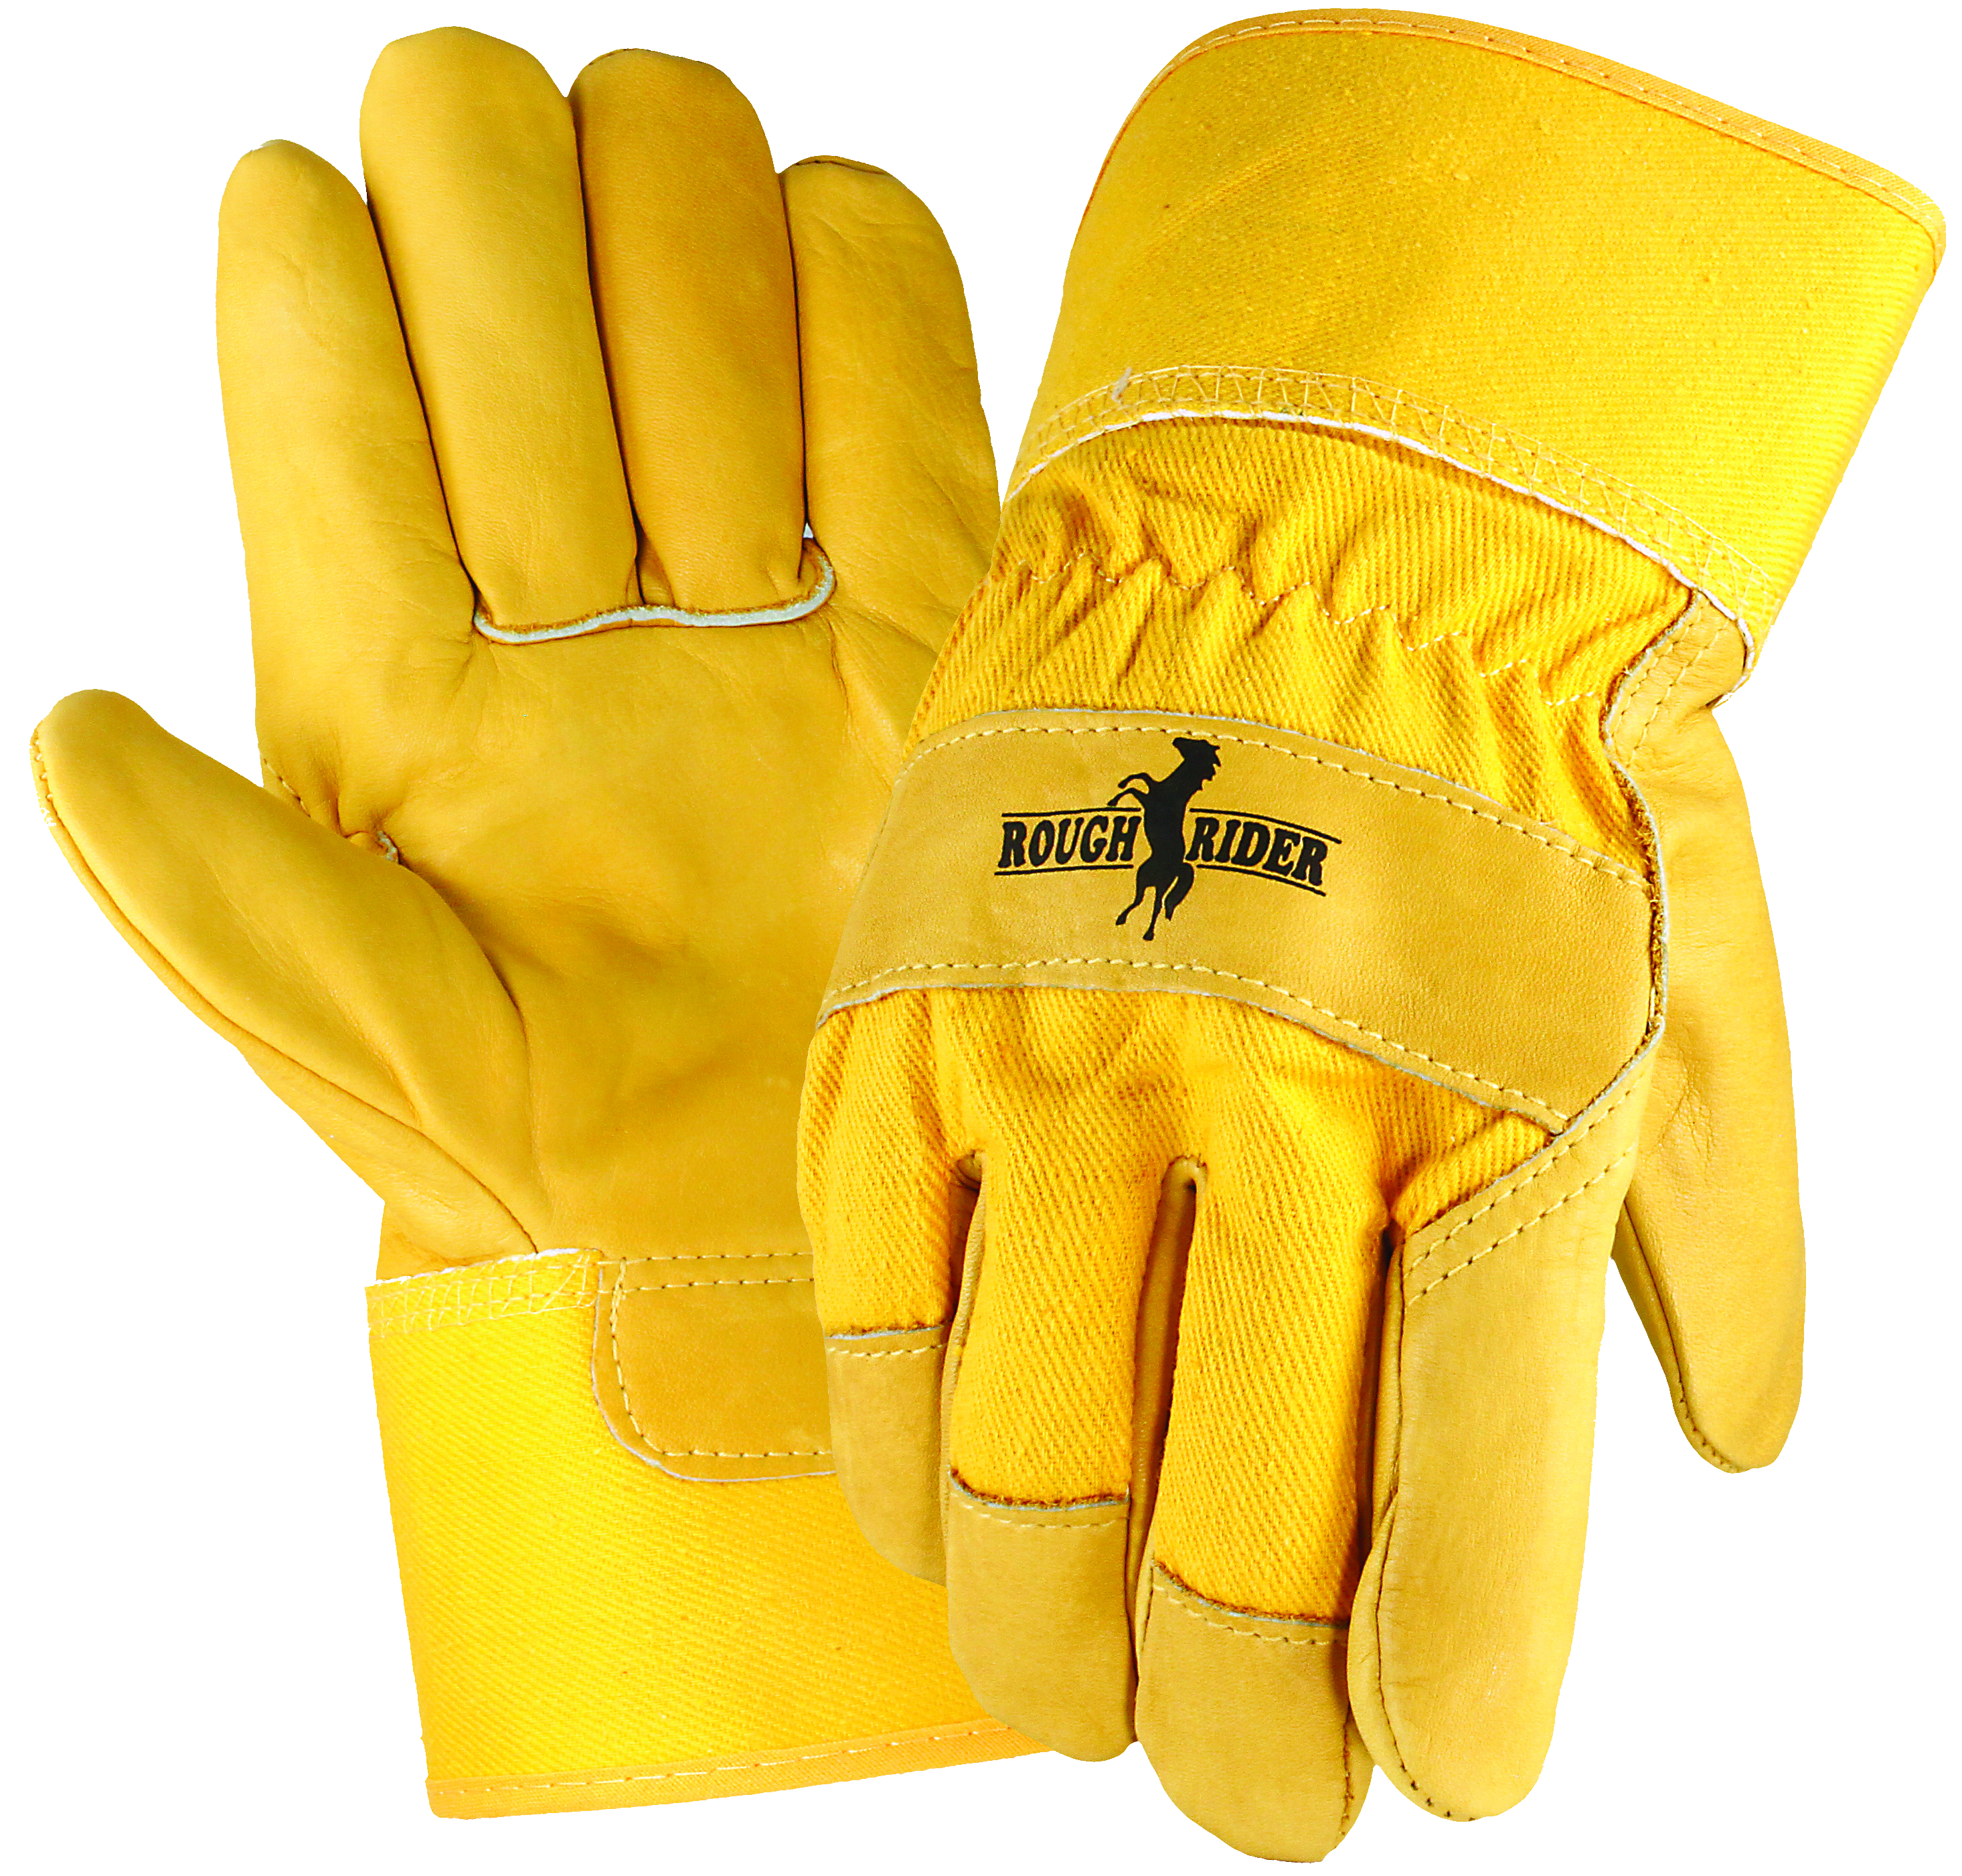 Rough Rider&reg; Grain Leather Palm Gloves, Safety Cuff